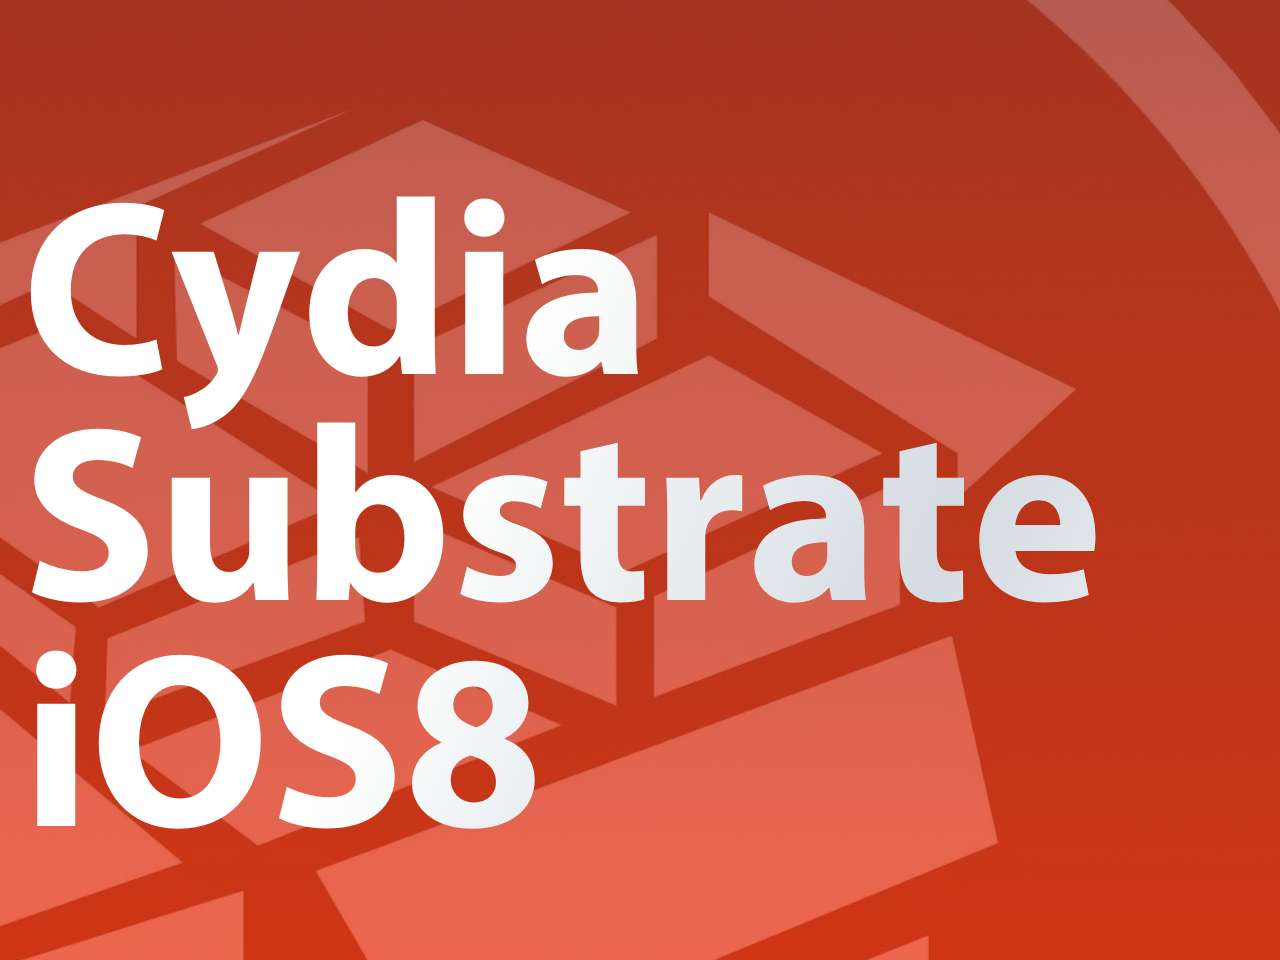 Cydia Substrate